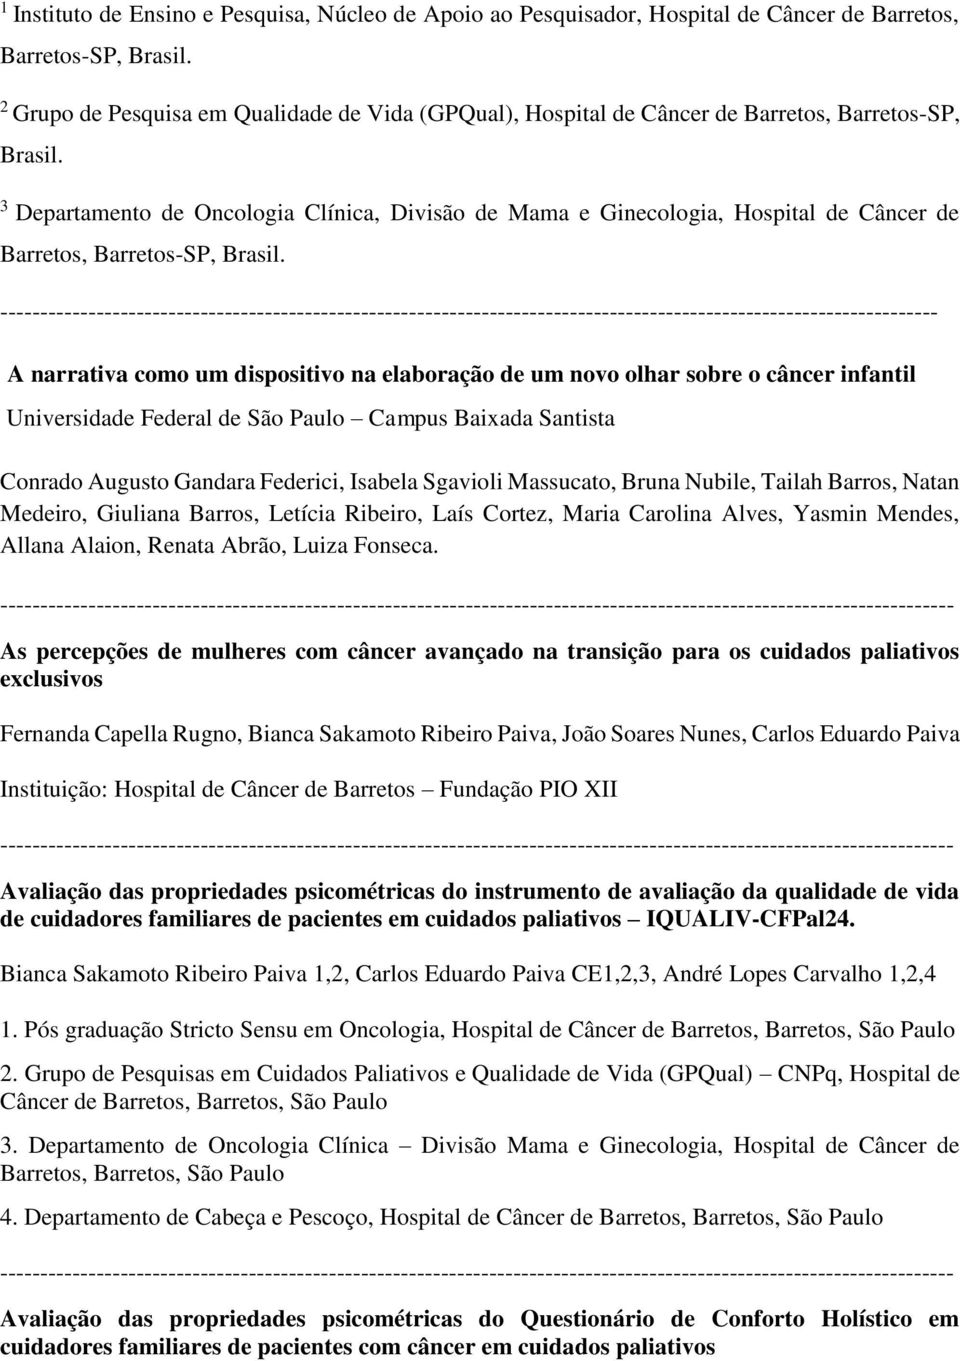 3 Departamento de Oncologia Clínica, Divisão de Mama e Ginecologia, Hospital de Câncer de Barretos, Barretos-SP, Brasil.